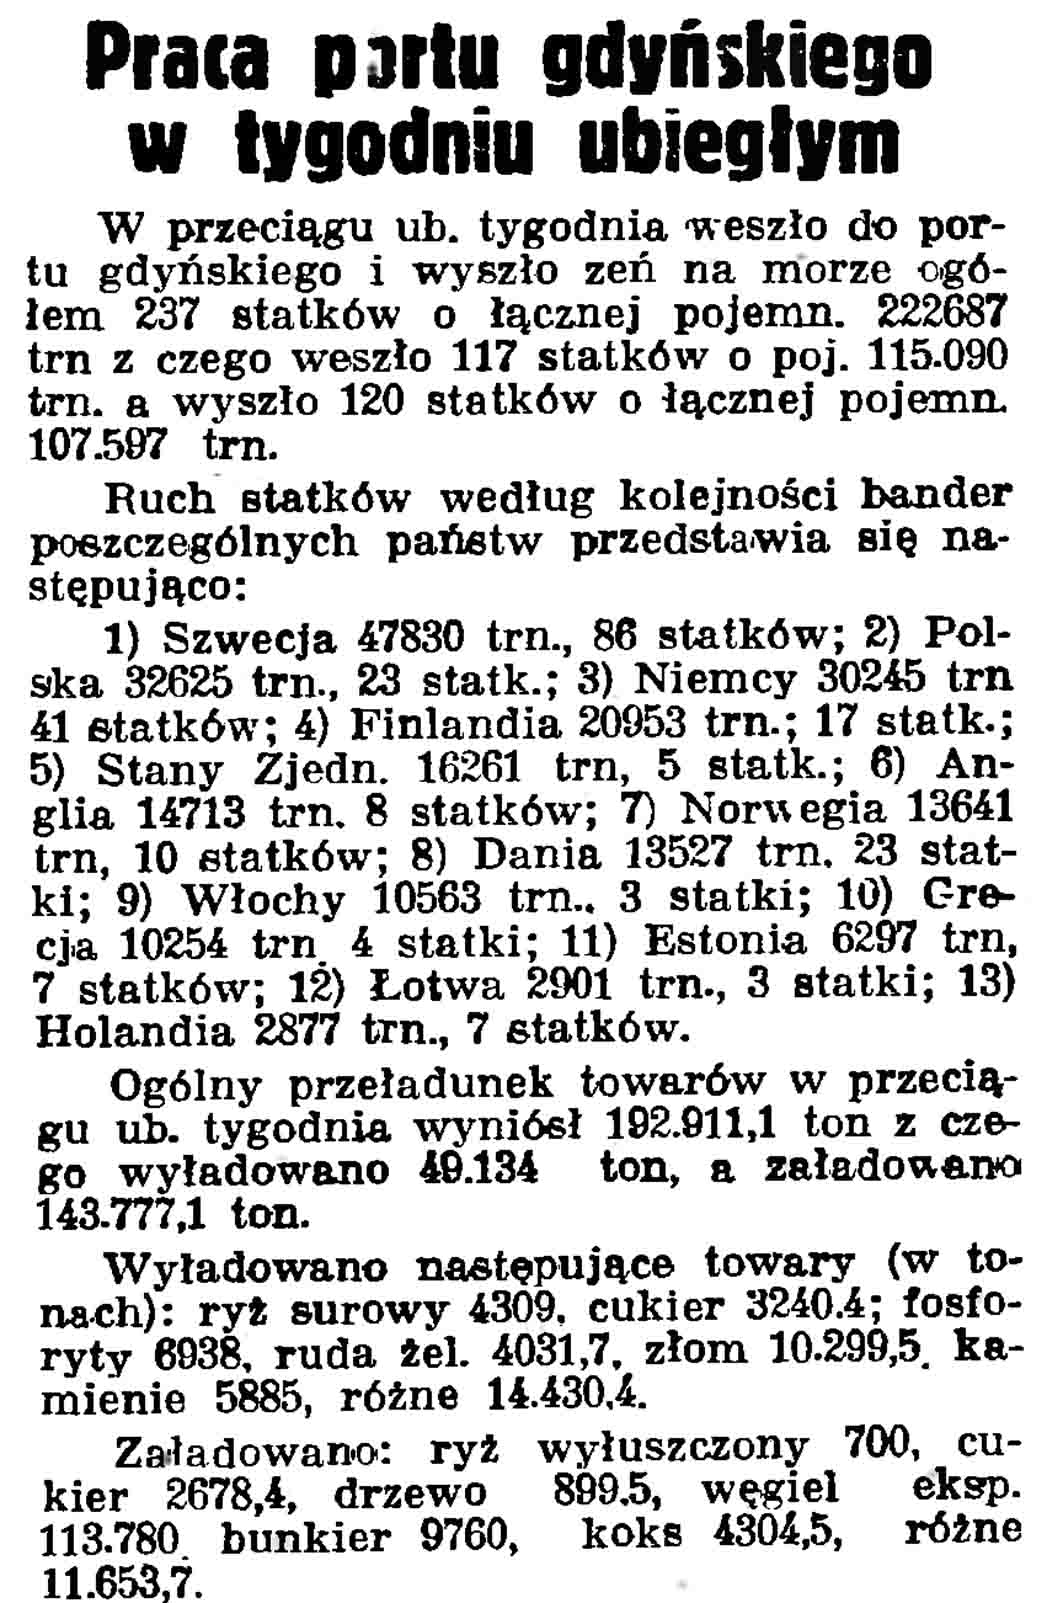 Praca portu gdyńskiego w tygodniu ubiegłym // Gazeta Gdańska. - 1937. - 100, s. 9